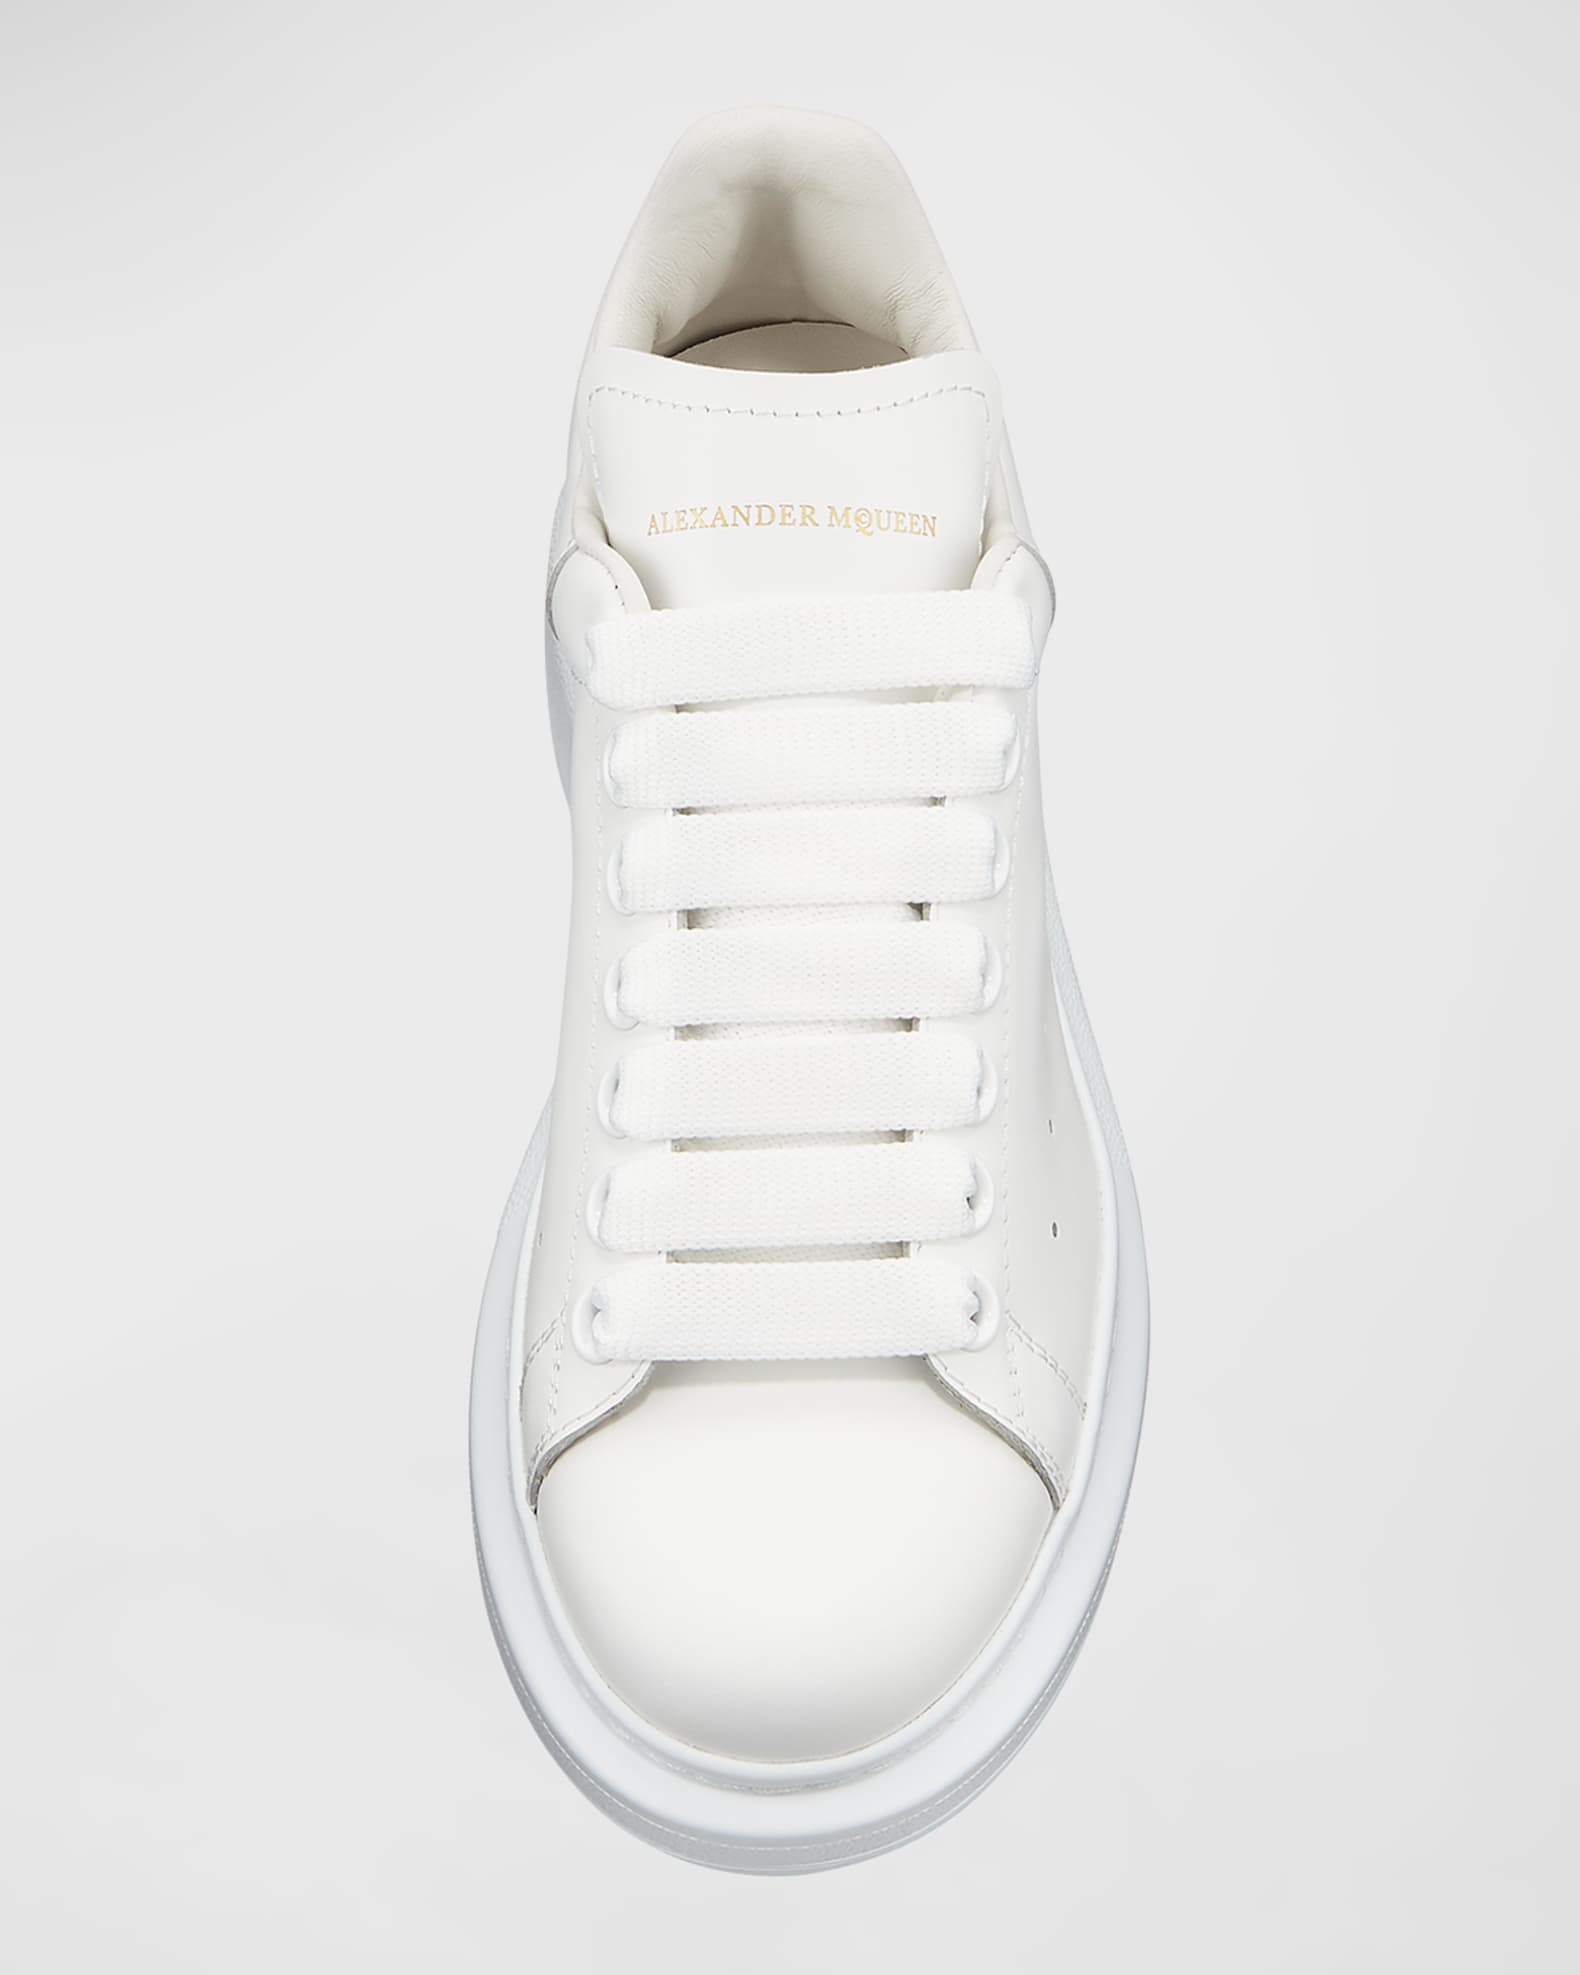 Alexander McQueen Oversized Sneakers | Neiman Marcus